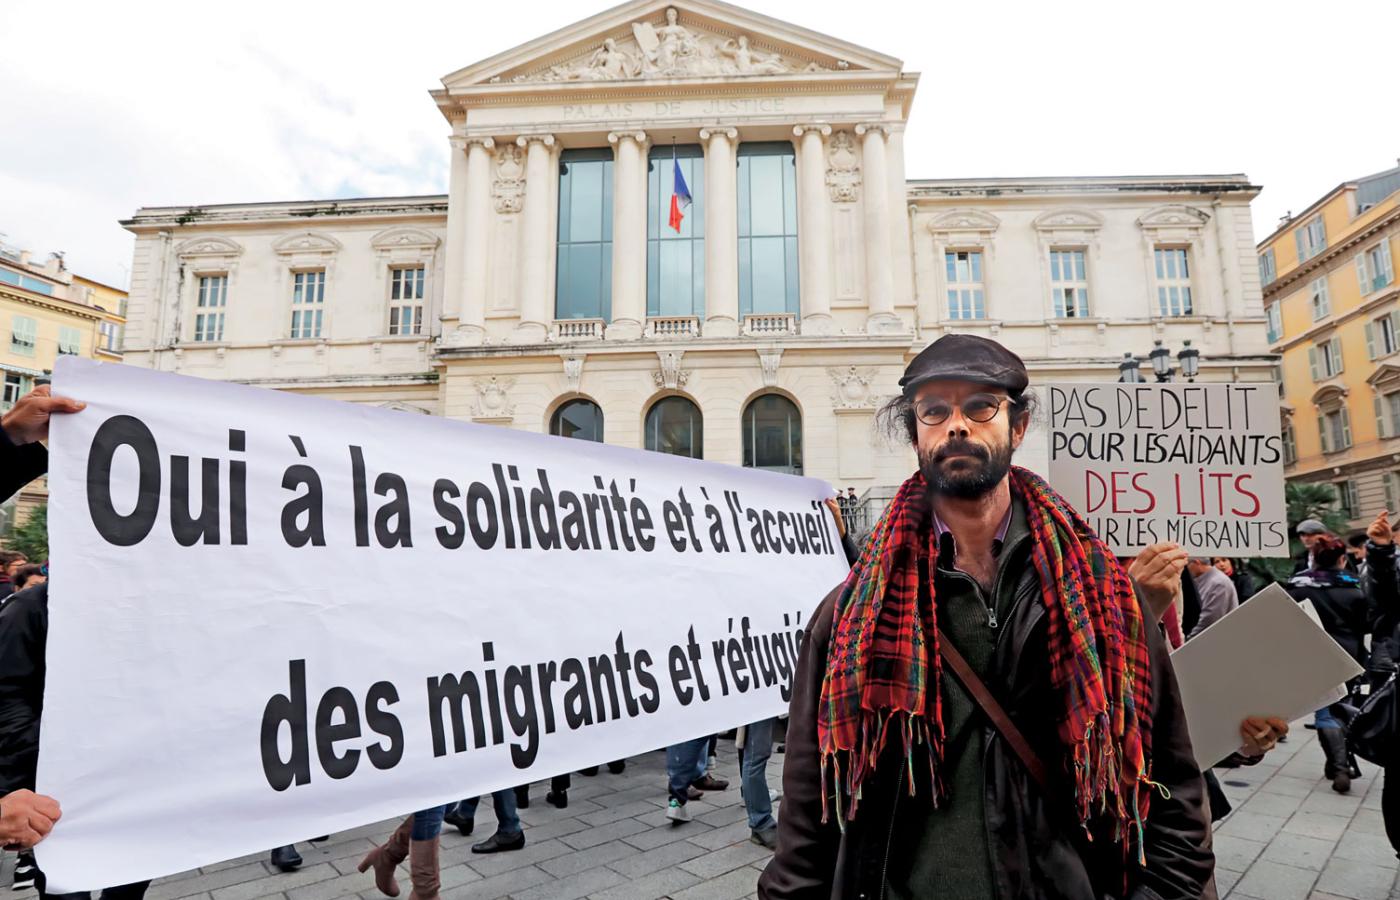 Cédric Herrou stanął przed sądem w Nicei za ułatwianie nielegalnego pobytu obcokrajowcom we Francji.